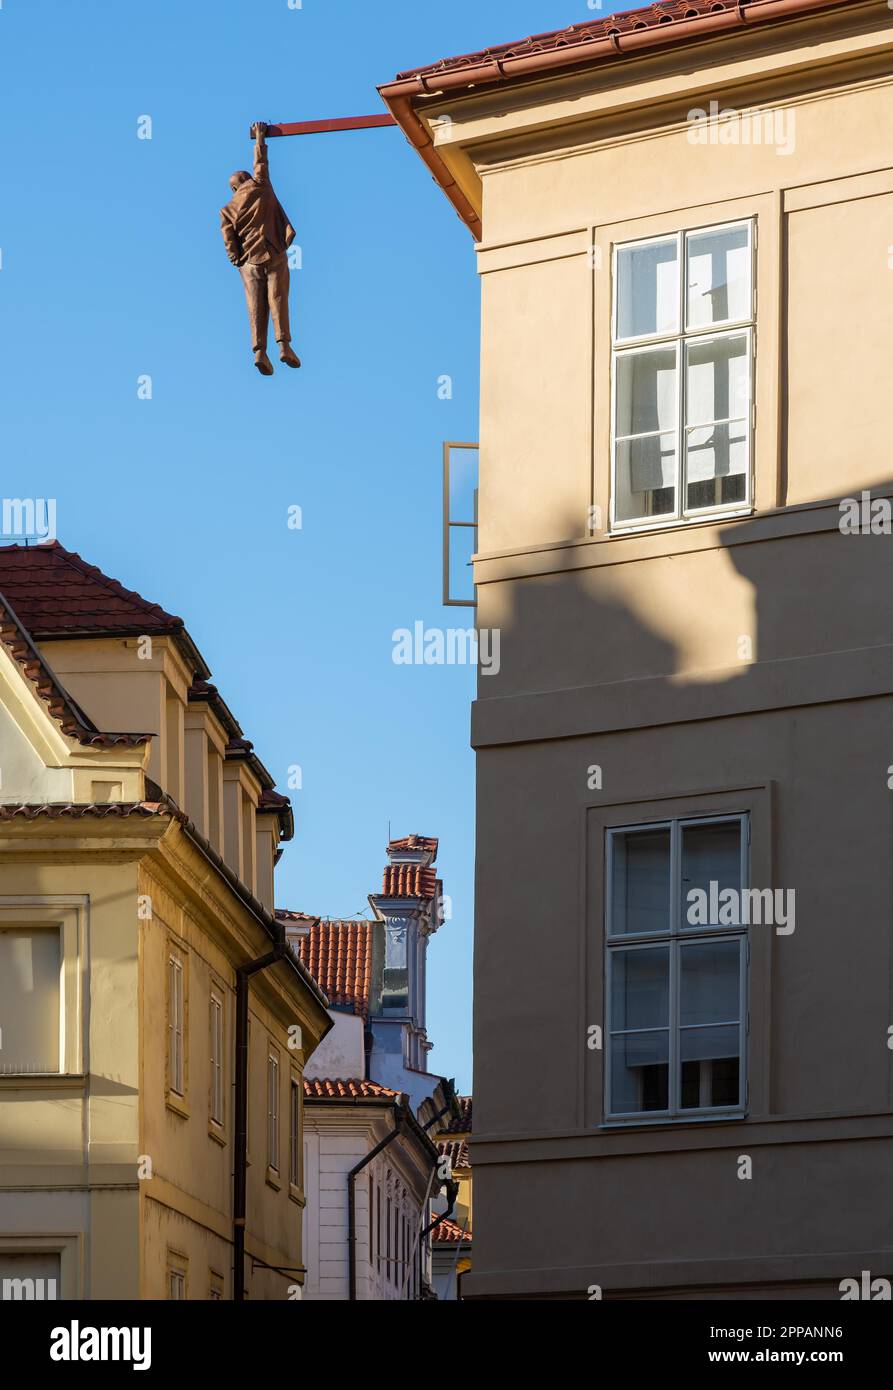 PRAG, TSCHECHISCHE REPUBLIK - SEPTEMBER 3: Skulptur des Erhängenden in Prag, Tschechische Republik am 3. September 2019. Die Figur von David Cerny, erbaut 1997 Stockfoto